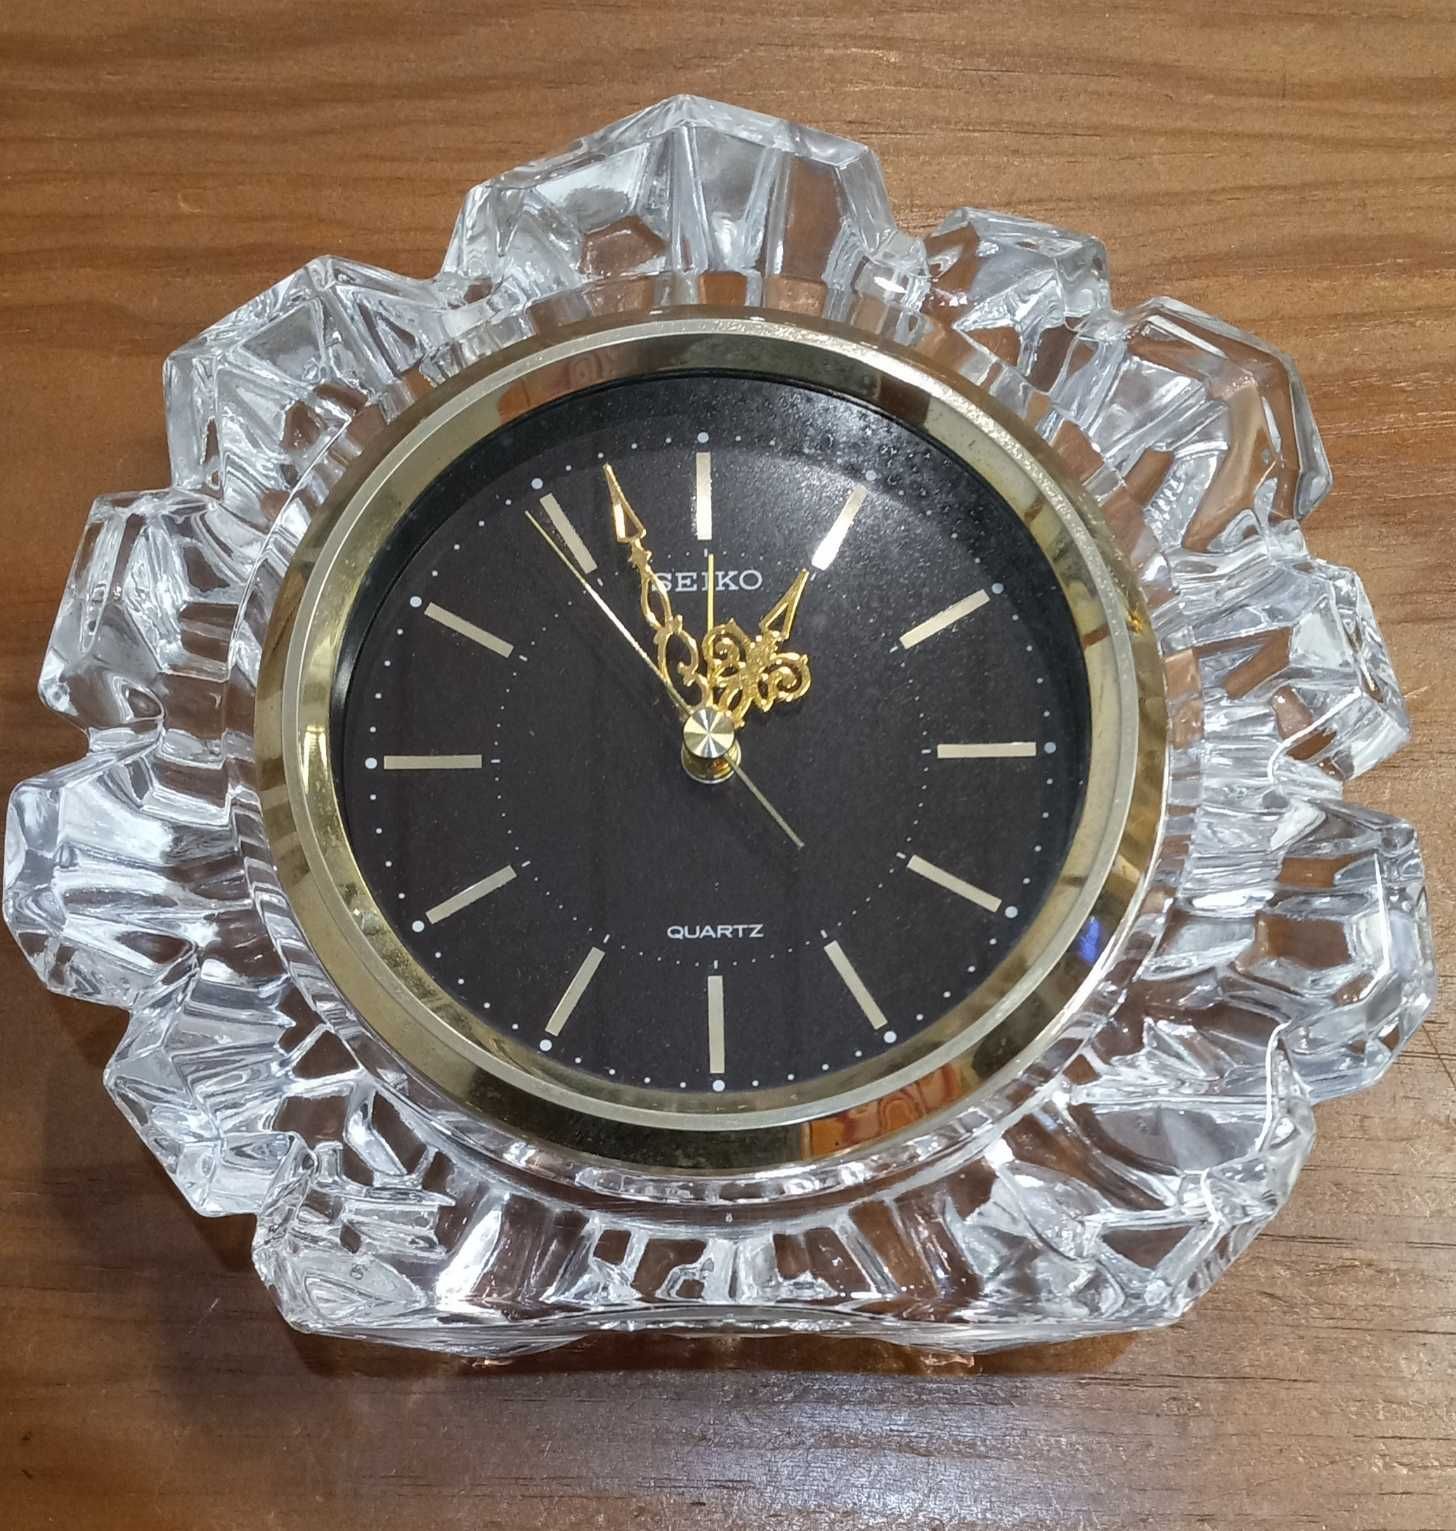 Vintage Seiko Crystal Table Clock